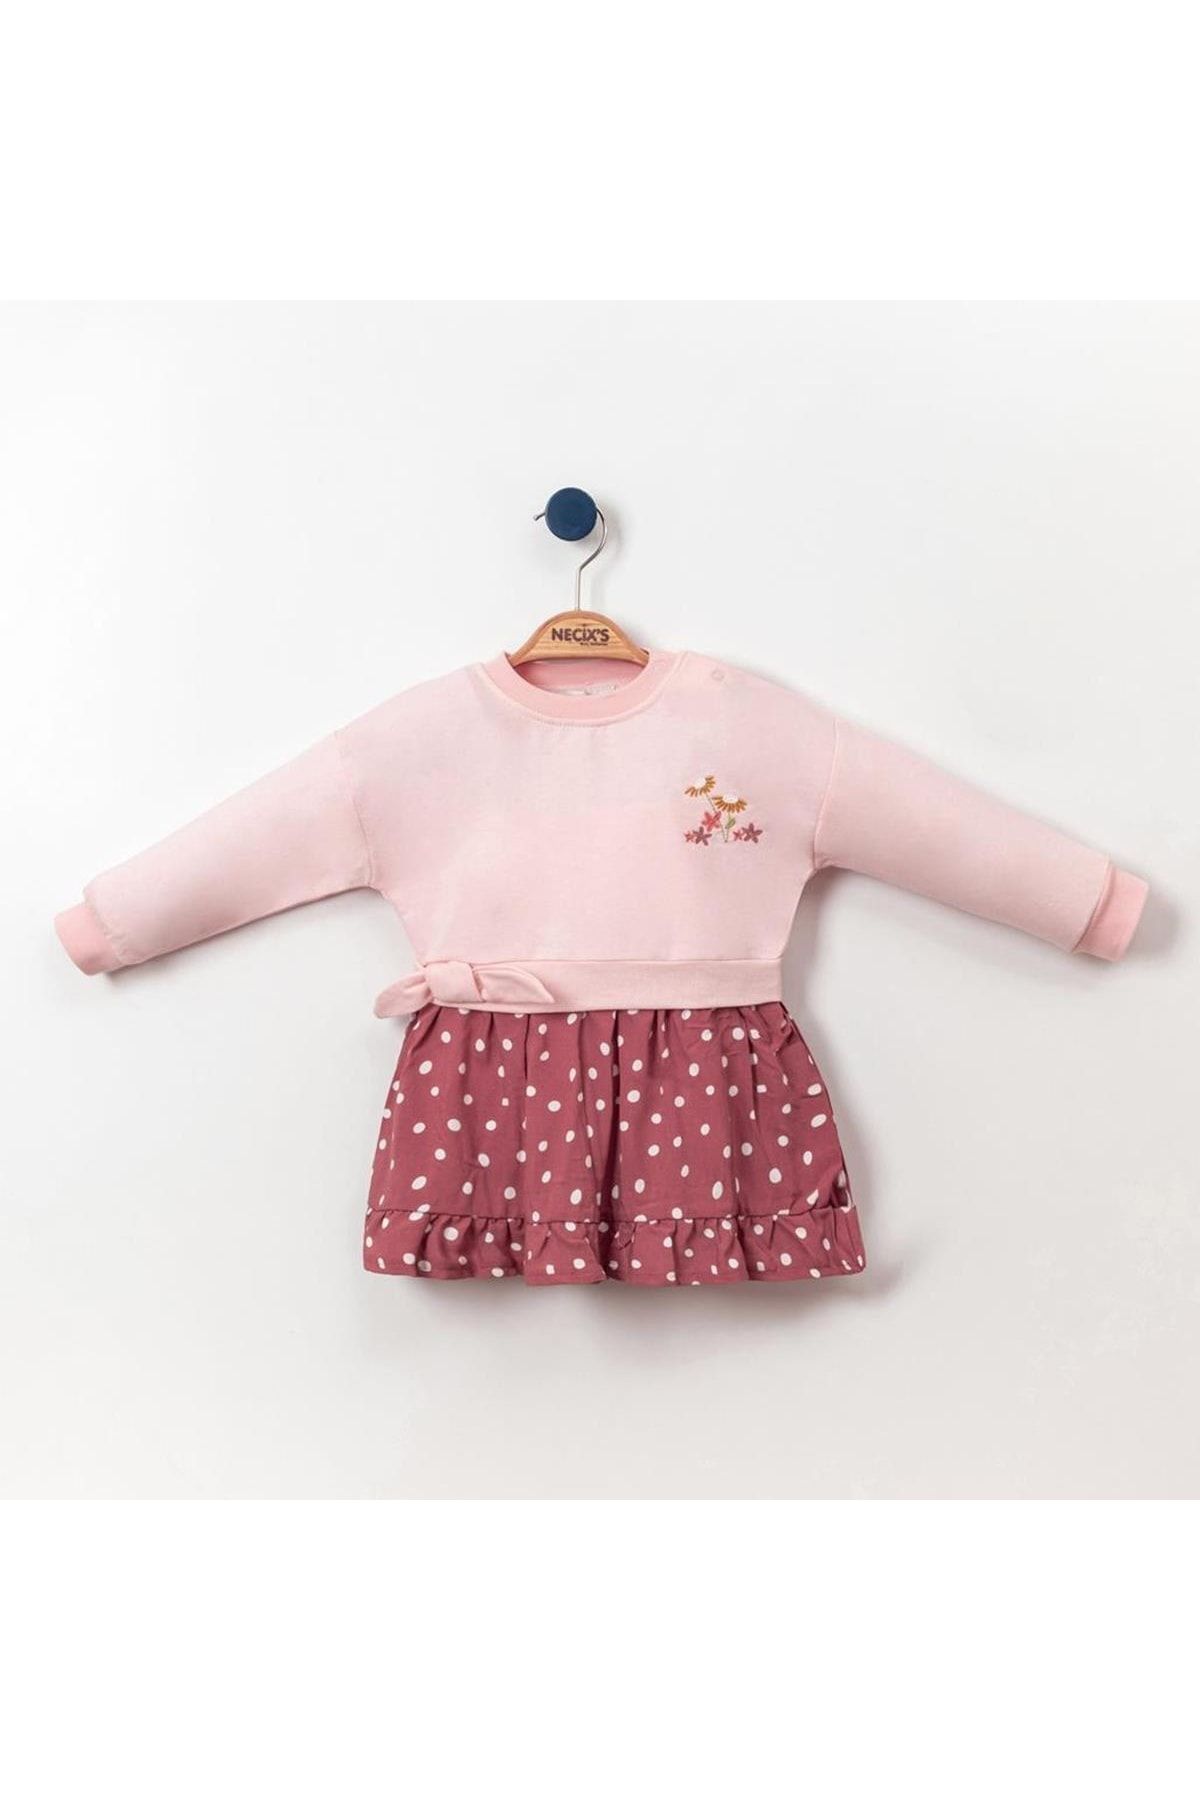 Necix's Fırfırlı Düşük Kol Kız Bebek Elbise